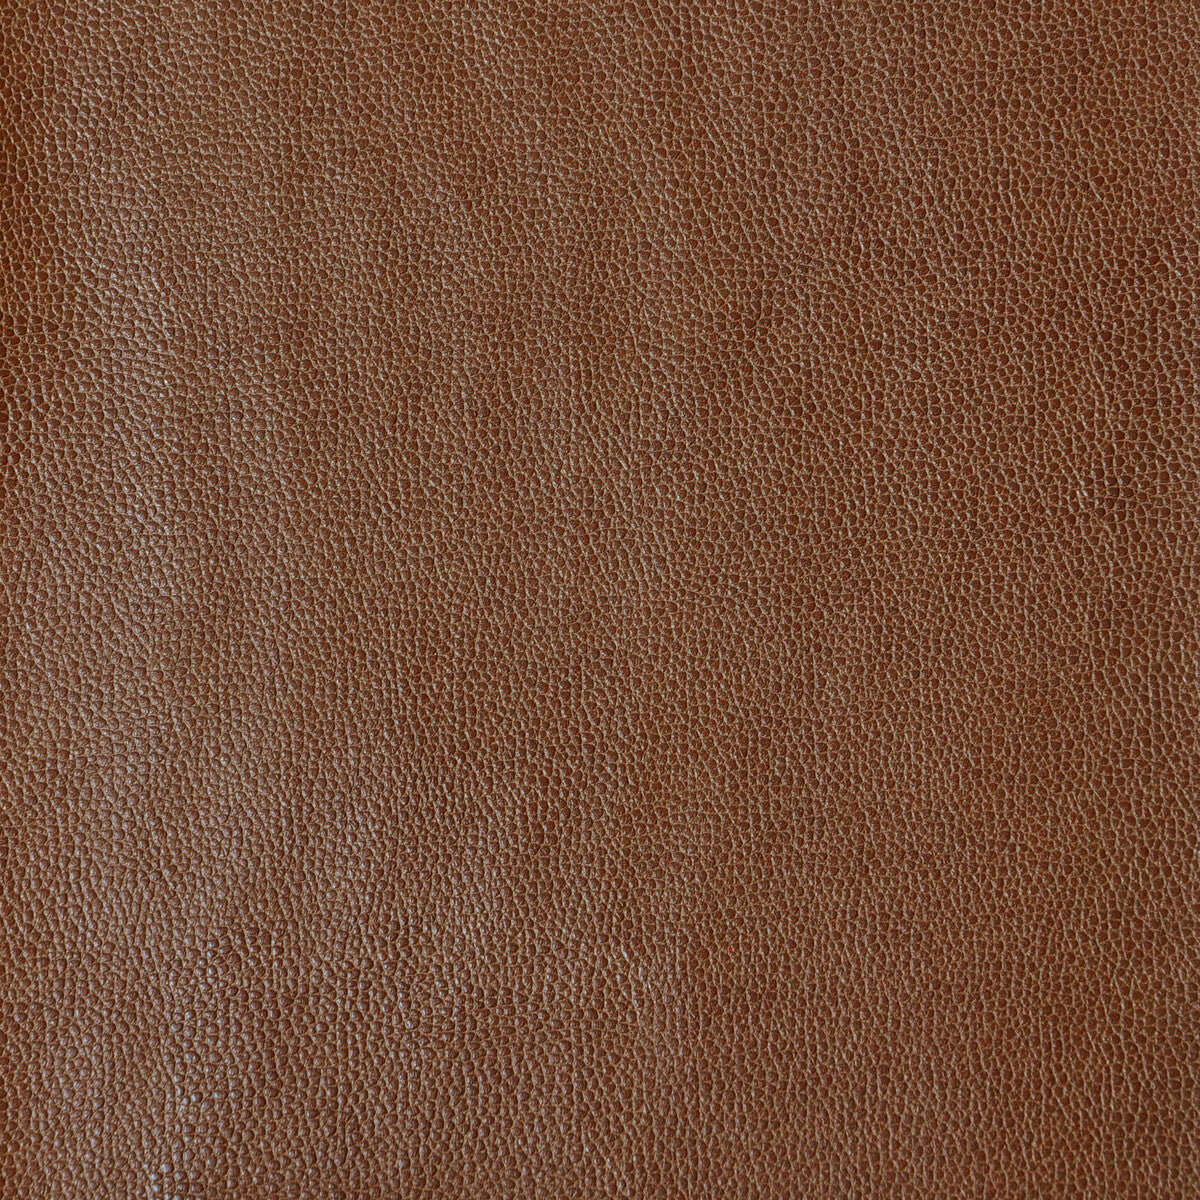 Kravet Design fabric in sparta-616 color - pattern SPARTA.616.0 - by Kravet Design